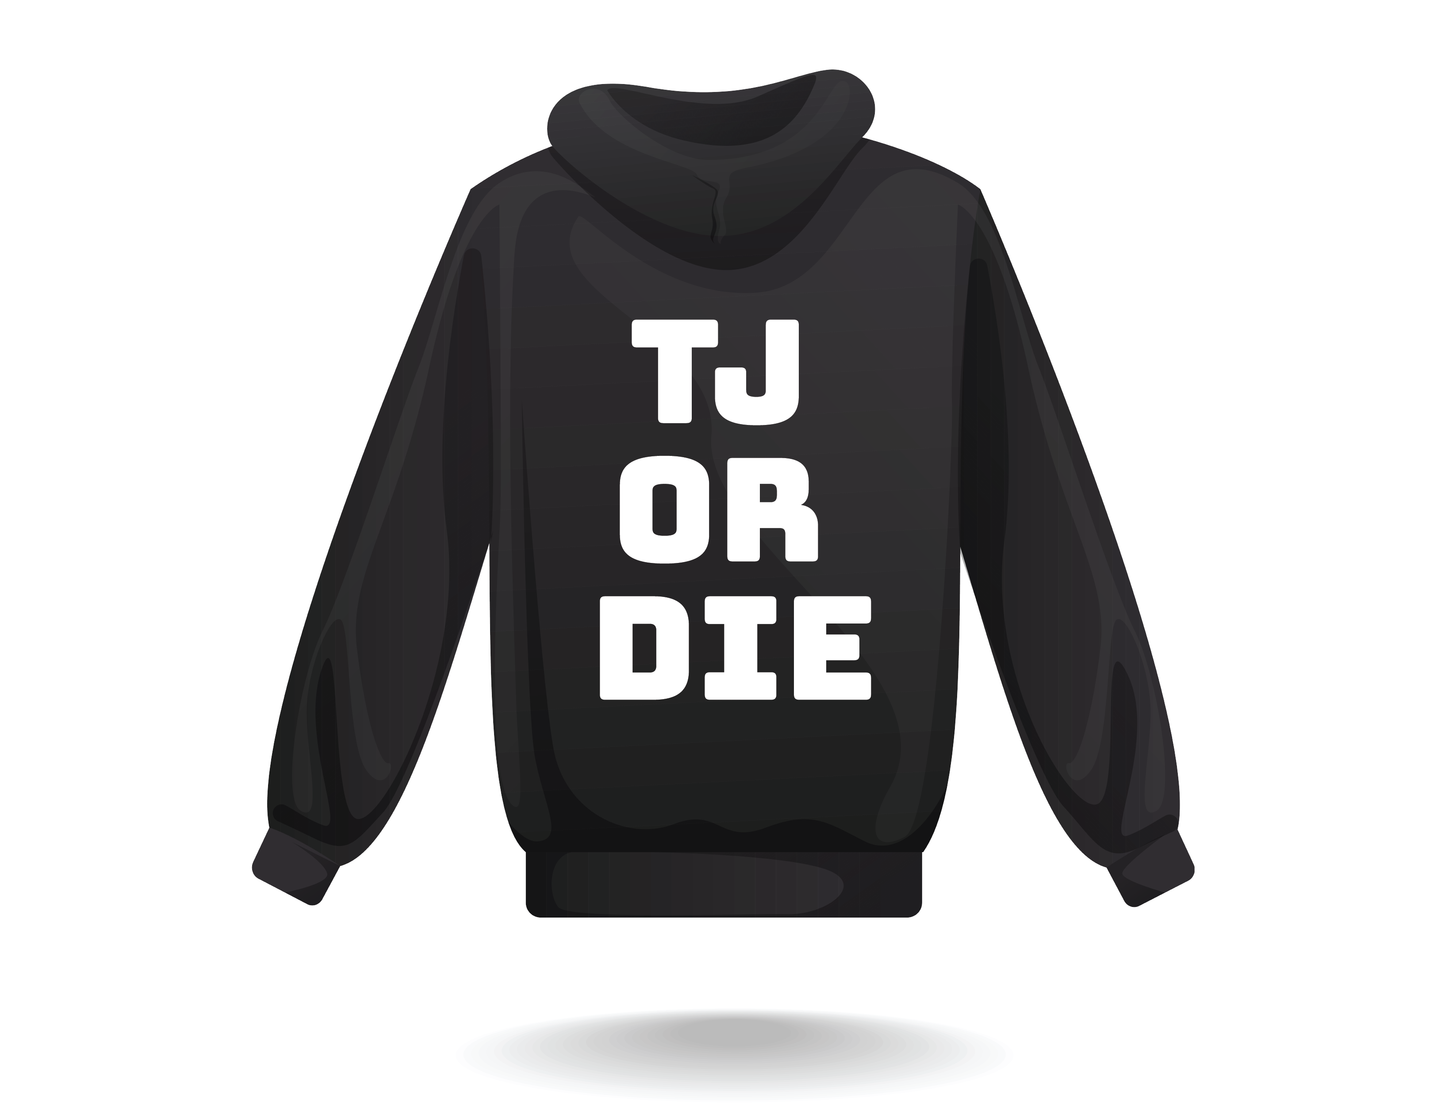 'TJ OR DIE" Hoodie